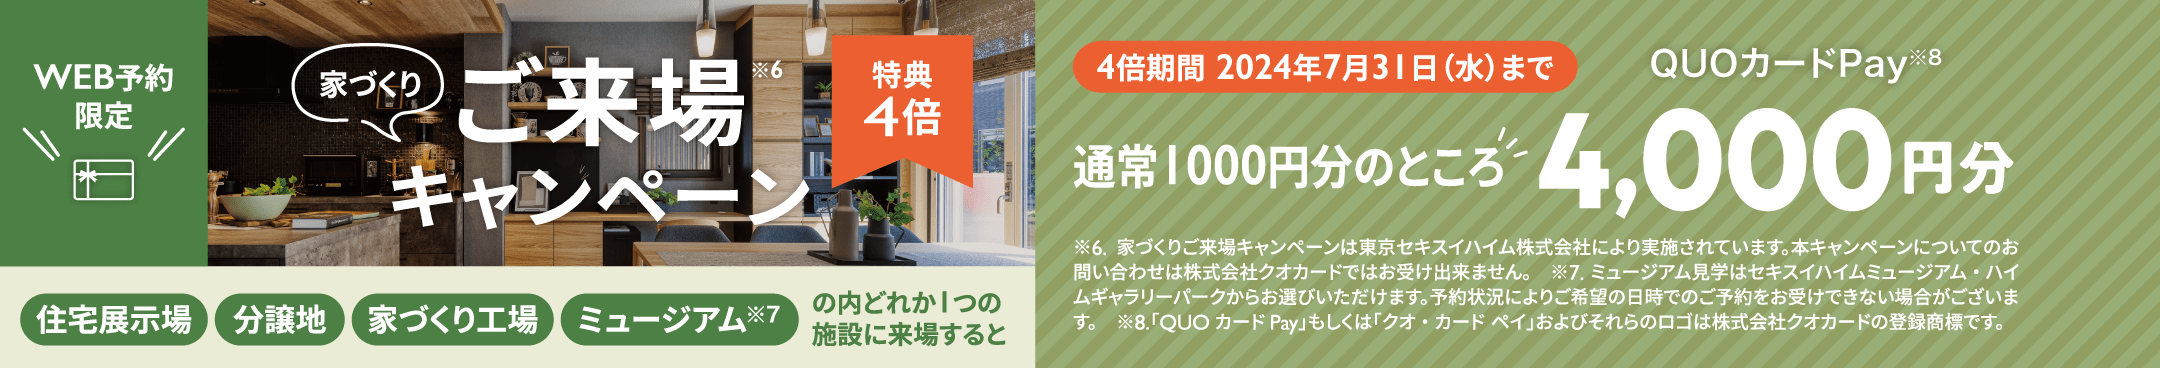 家づくりご来場キャンペーン　特典4倍　WEB予約限定4倍期間 2024年7月31日（水）まで 住宅展示場 分譲地 家づくり工場 ミュージアム※7 の内どれか1つの施設に来場すると通常1000円分のところQUOカードPay※8 4,000円分 家づくりご来場キャンペーンは東京セキスイハイム株式会社により実施されています。本キャンペーンについてのお問い合わせは株式会社クオカードではお受け出来ません。　※7.ミュージアム見学はセキスイハイムミュージアム・ハイムギャラリーパークからお選びいただけます。予約状況によりご希望の日時でのご予約をお受けできない場合がございます。　※8.「QUOカードPay」もしくは「クオ・カード ペイ」およびそれらのロゴは株式会社クオカードの登録商標です。